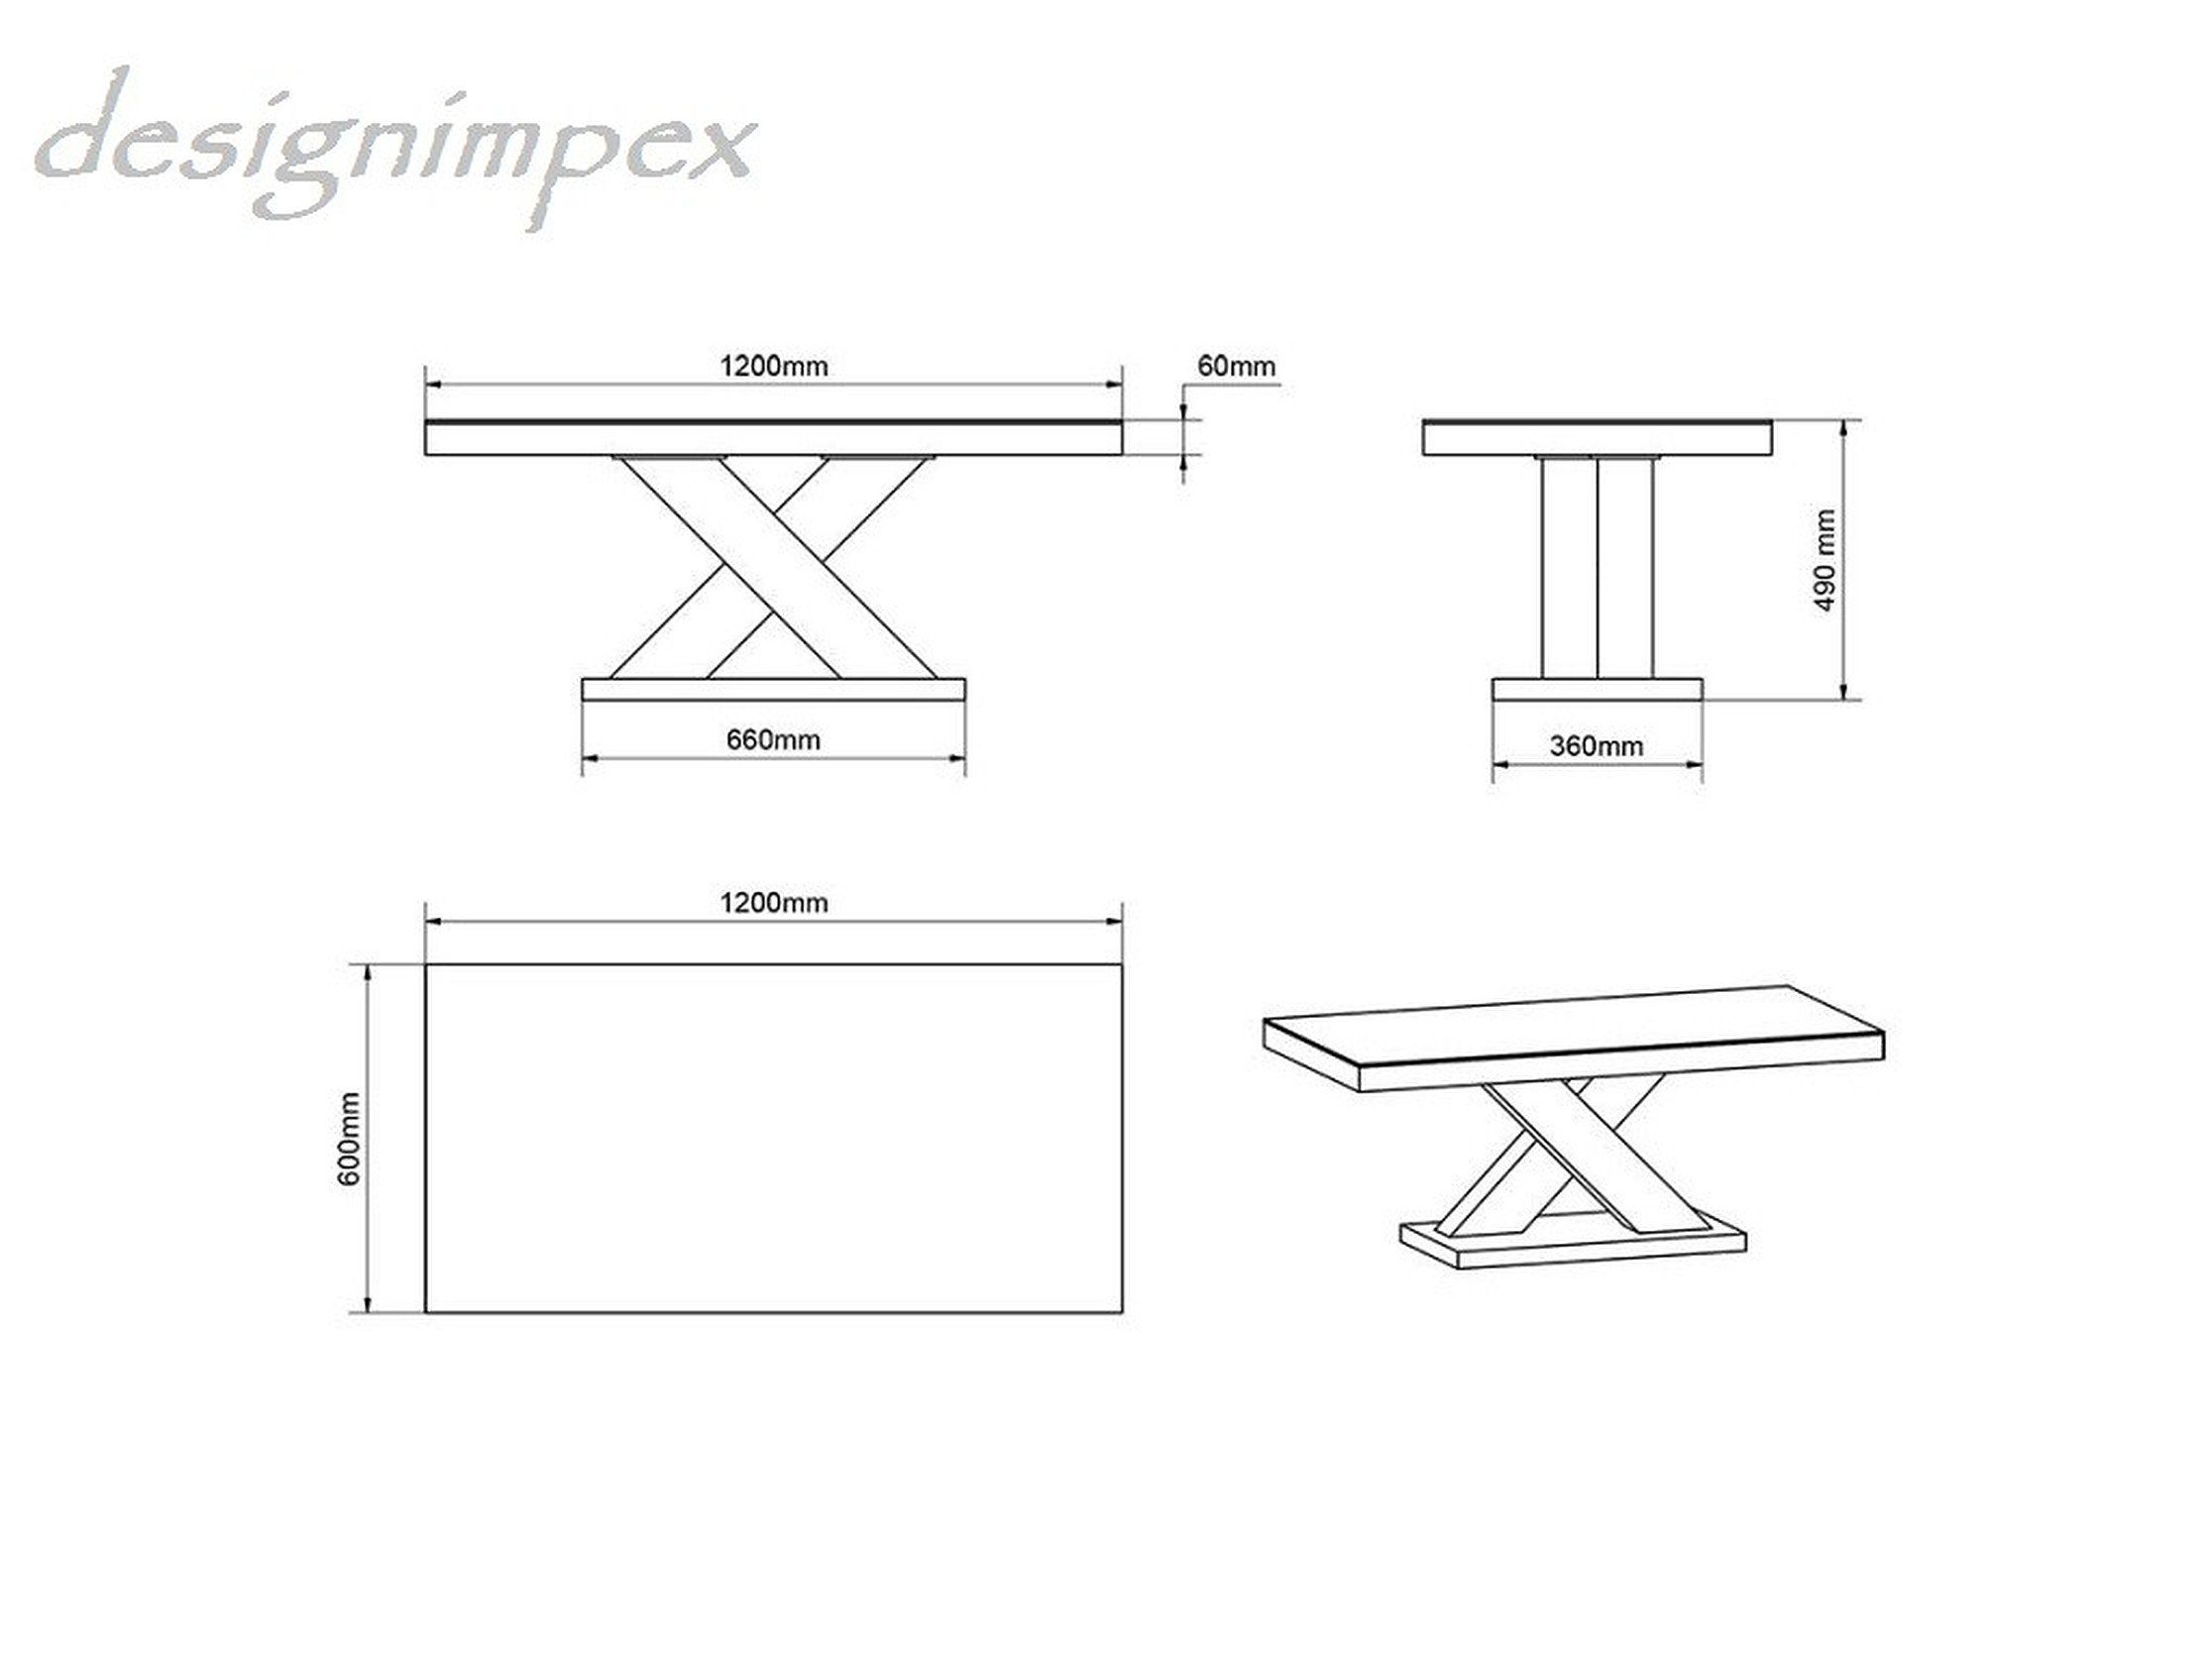 Highgloss Weiß Design designimpex Hochglanz / Weiß Tisch Beton Hochglanz Beton Wohnzimmertisch Couchtisch H-888 -